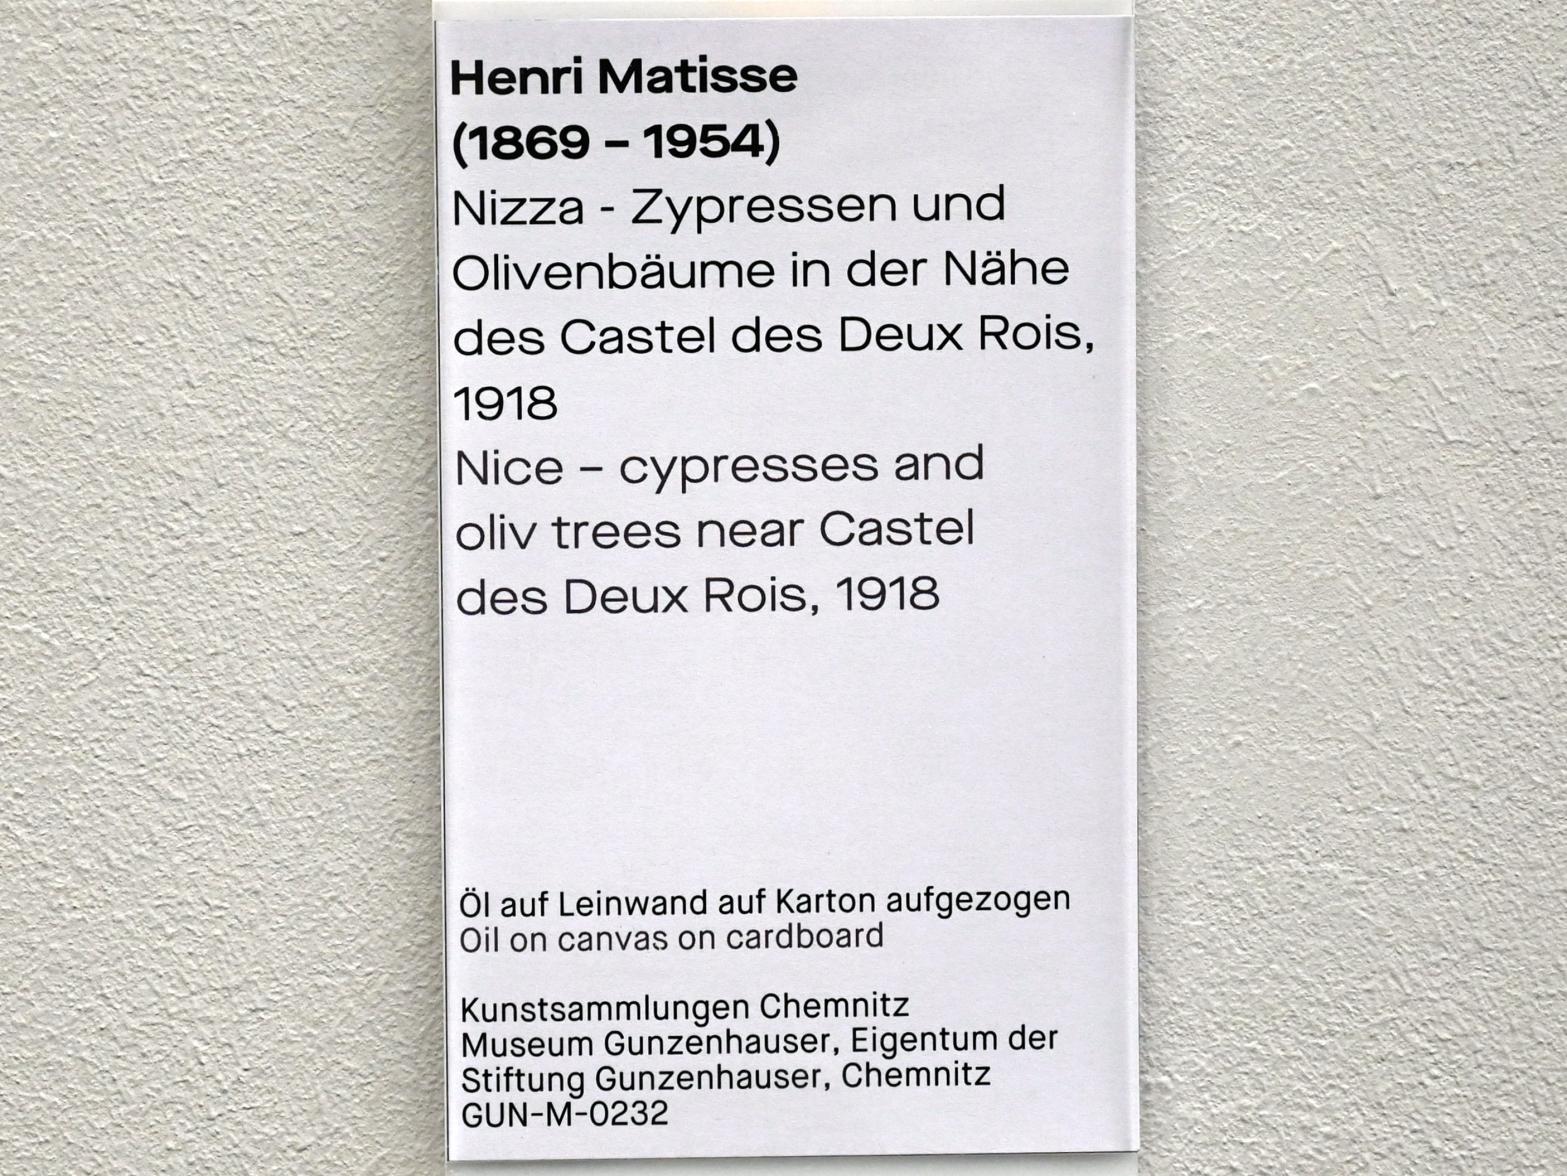 Henri Matisse (1898–1953), Nizza - Zypressen und Olivenbäume in der Nähe des Castel des Deux Rois, Chemnitz, Museum Gunzenhauser, Saal 3.2 - Vorbild Frankreich, 1918, Bild 2/2